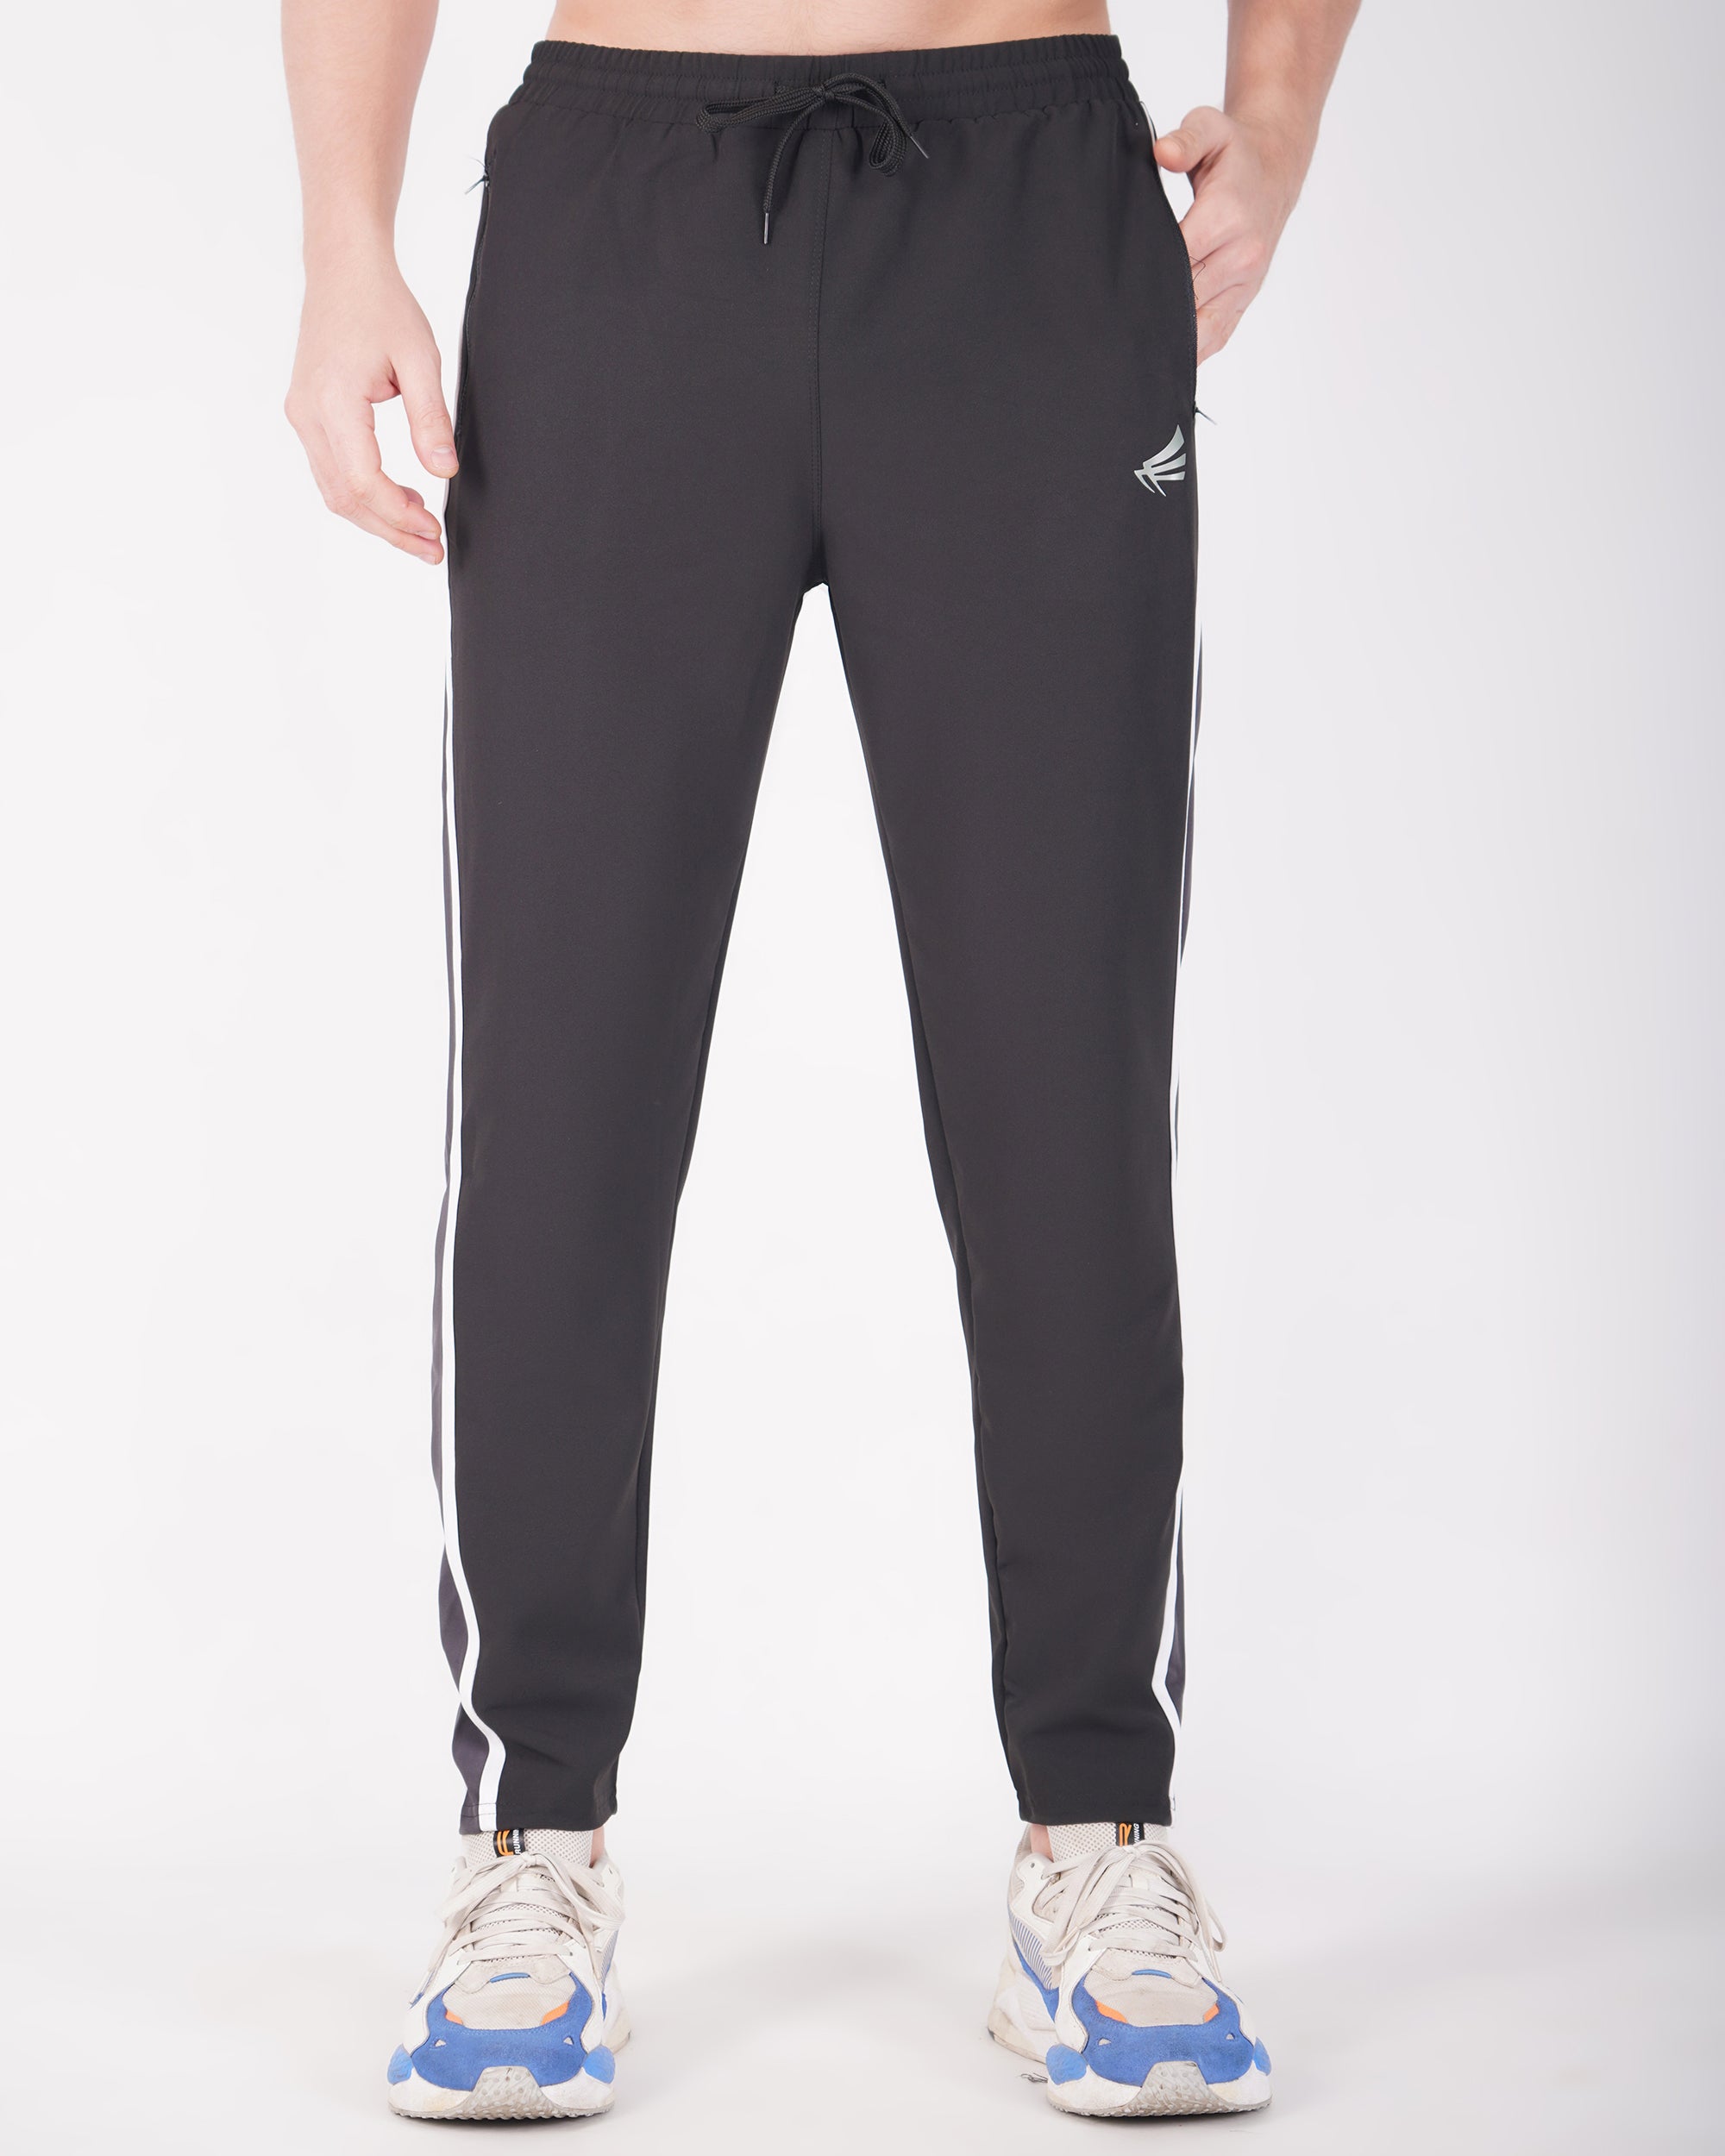 Adidas 3S Yoga Pant at Rs 1399.00, Adidas Track Pants